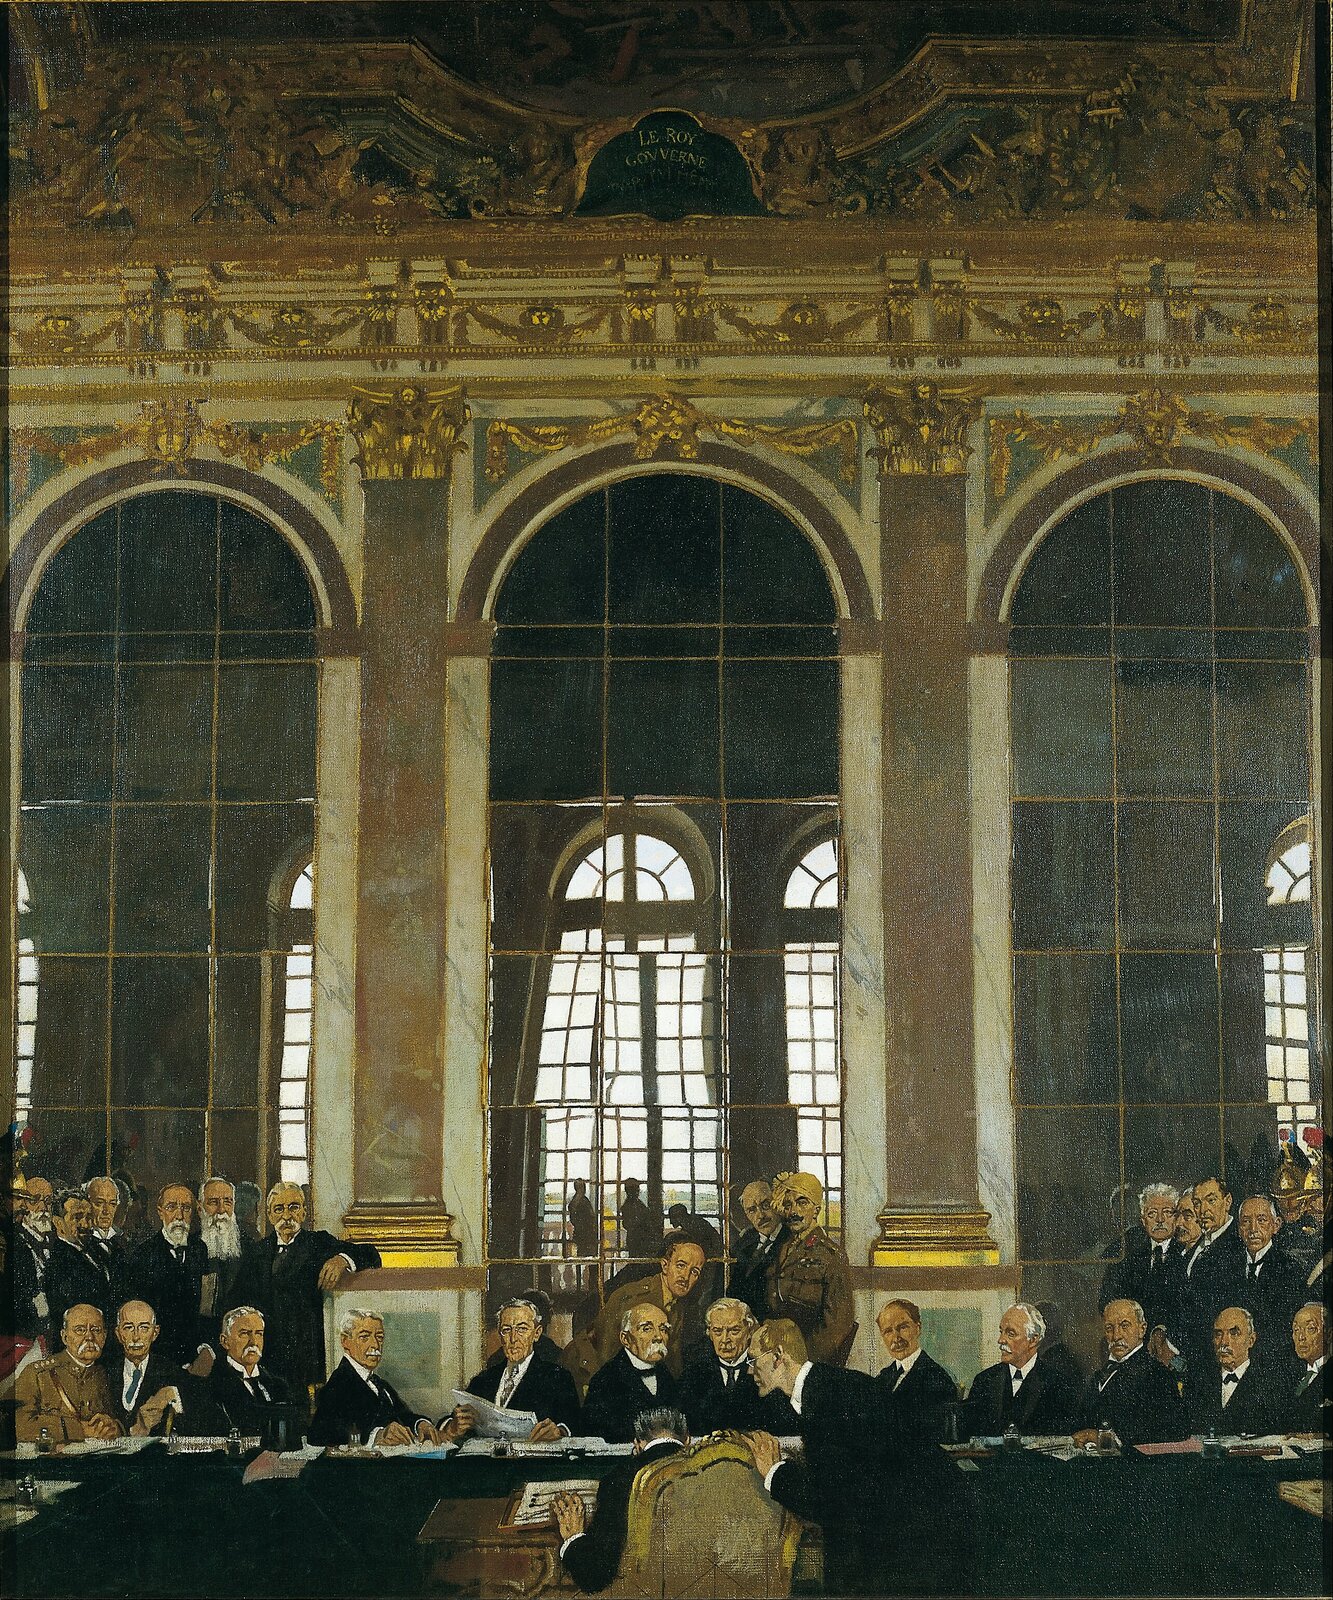 Podpisanie traktatu w Sali Lustrzanej Źródło: William Orpen, Podpisanie traktatu w Sali Lustrzanej, 1919, Olej, Imperial War Museum, domena publiczna.